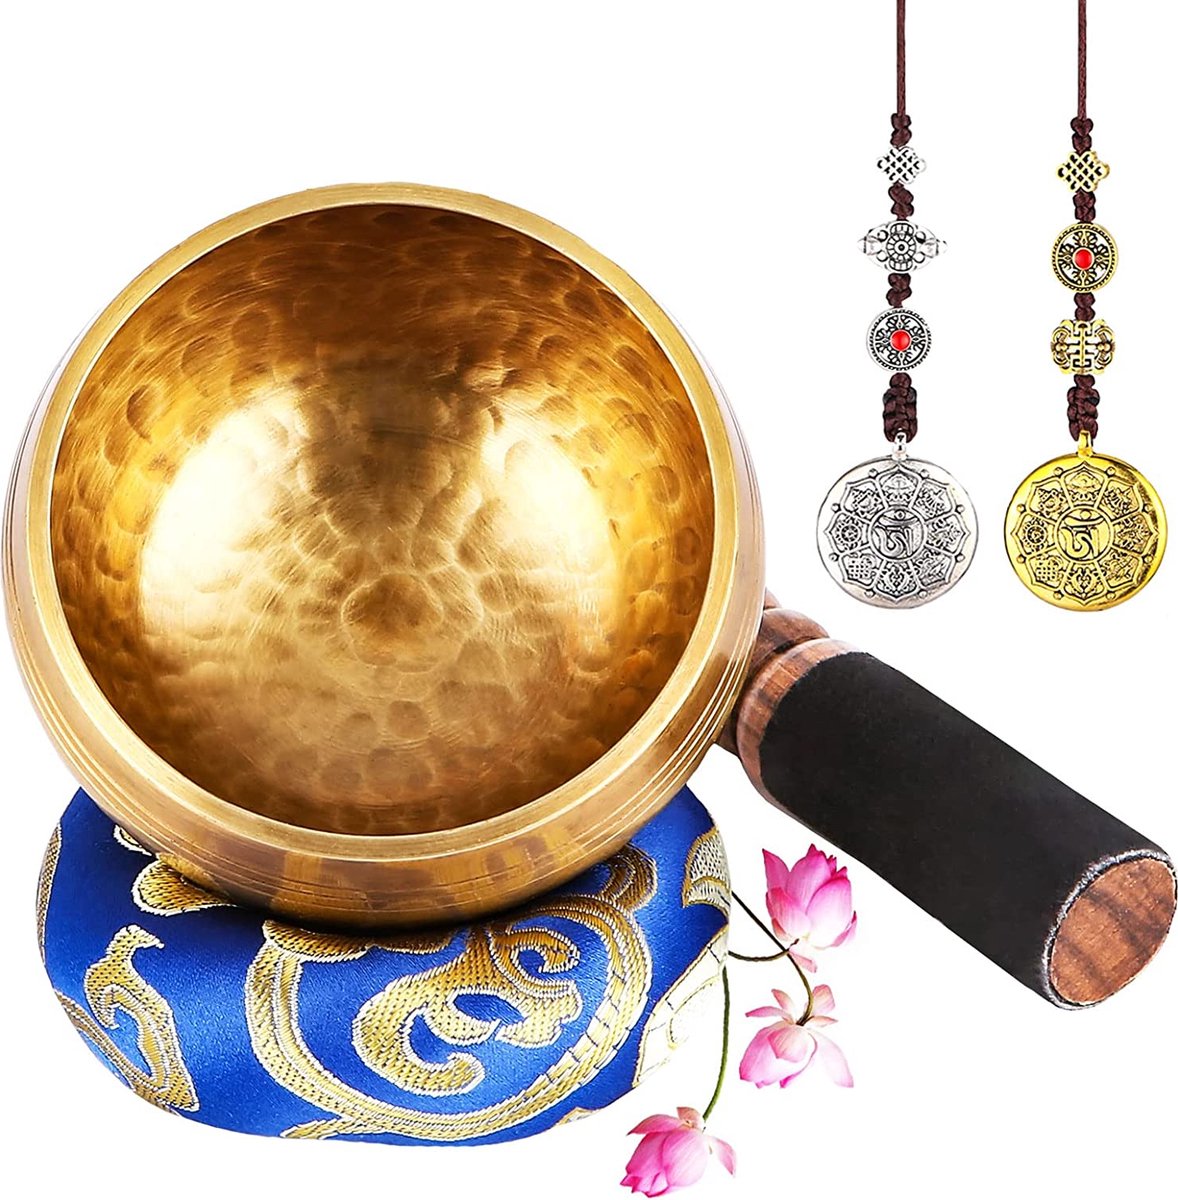 UNIDEAL Tibetaanse klankschaalset, Singing Bowl uit Tibet met klepel en klankschaalkussen, wordt geleverd met 2 belofte koperen ornamenten, handgemaakt in Nepal, voor yoga meditatie, ontspanning